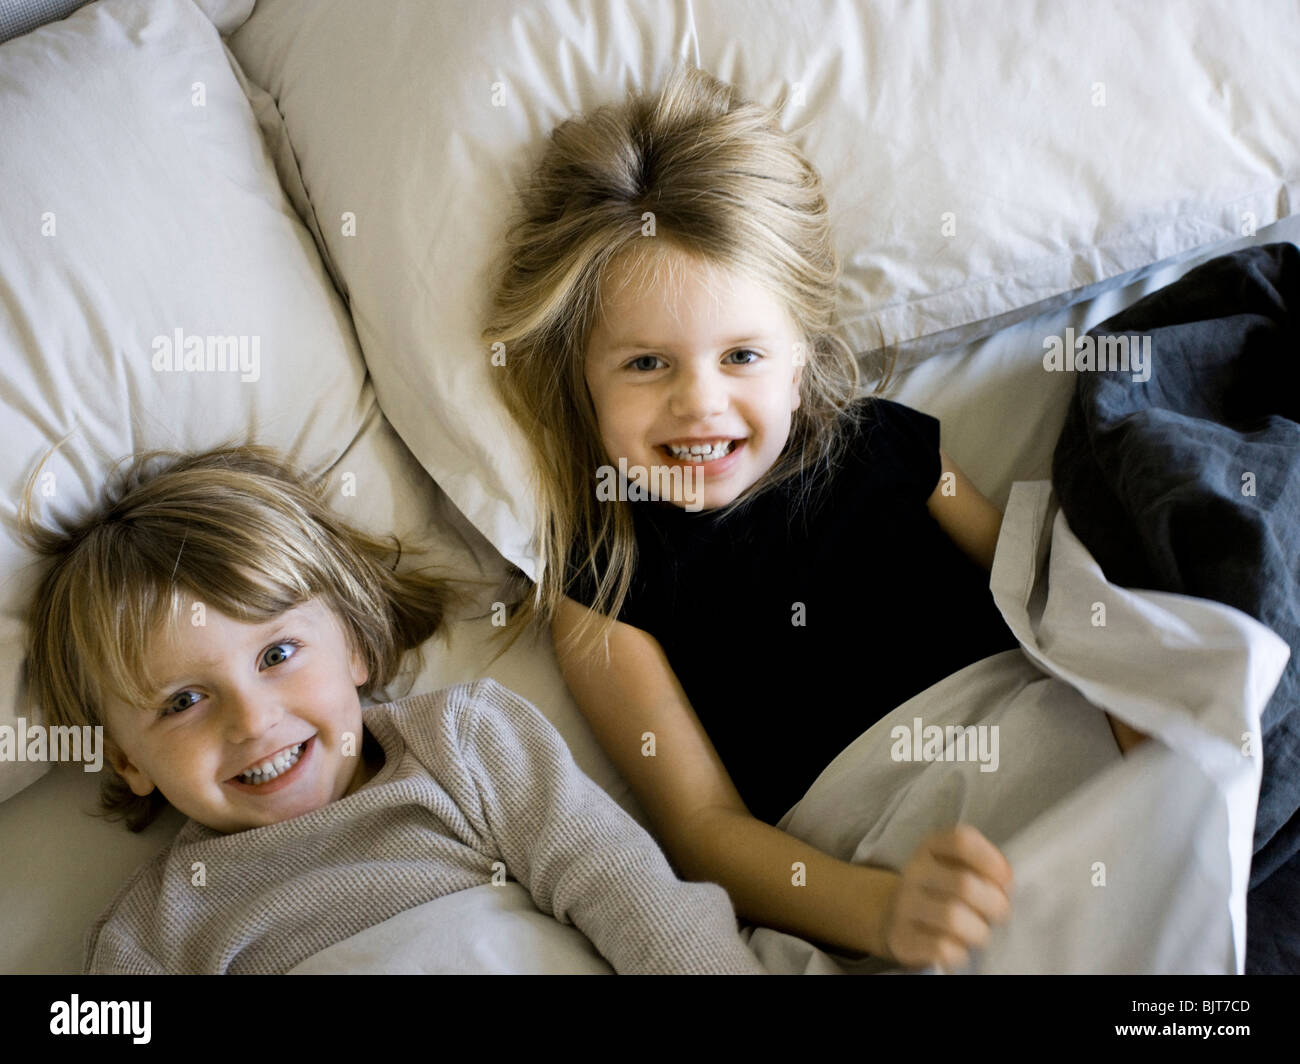 Stati Uniti d'America, Utah, Provo, Ritratto di fratello e sorella (2-5) giacente nel letto Foto Stock